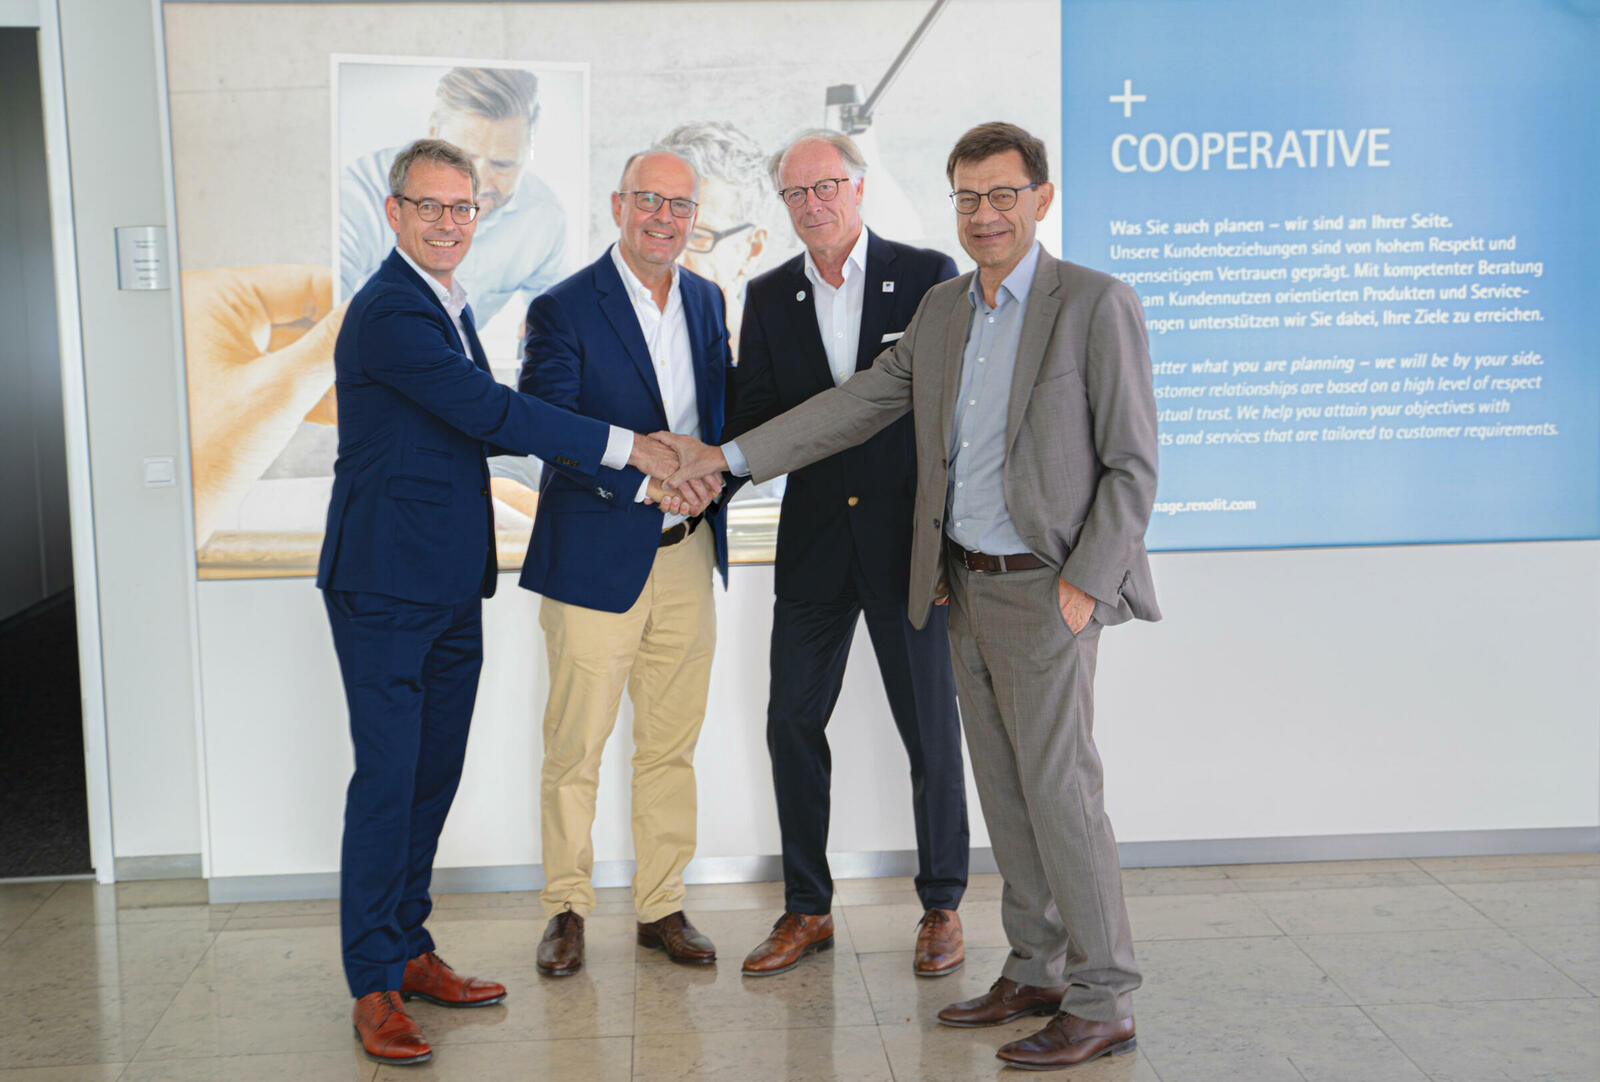 (v.l.n.r.) Sven Behrendt (Vorstand Renolit), Christian Krönig (SRK), Arndt Ehrlich (Renolit) und Gerald Reinisch (Renolit) nach der
Vertragsunterzeichnung für das neue Recycling-Joint Venture KAS.